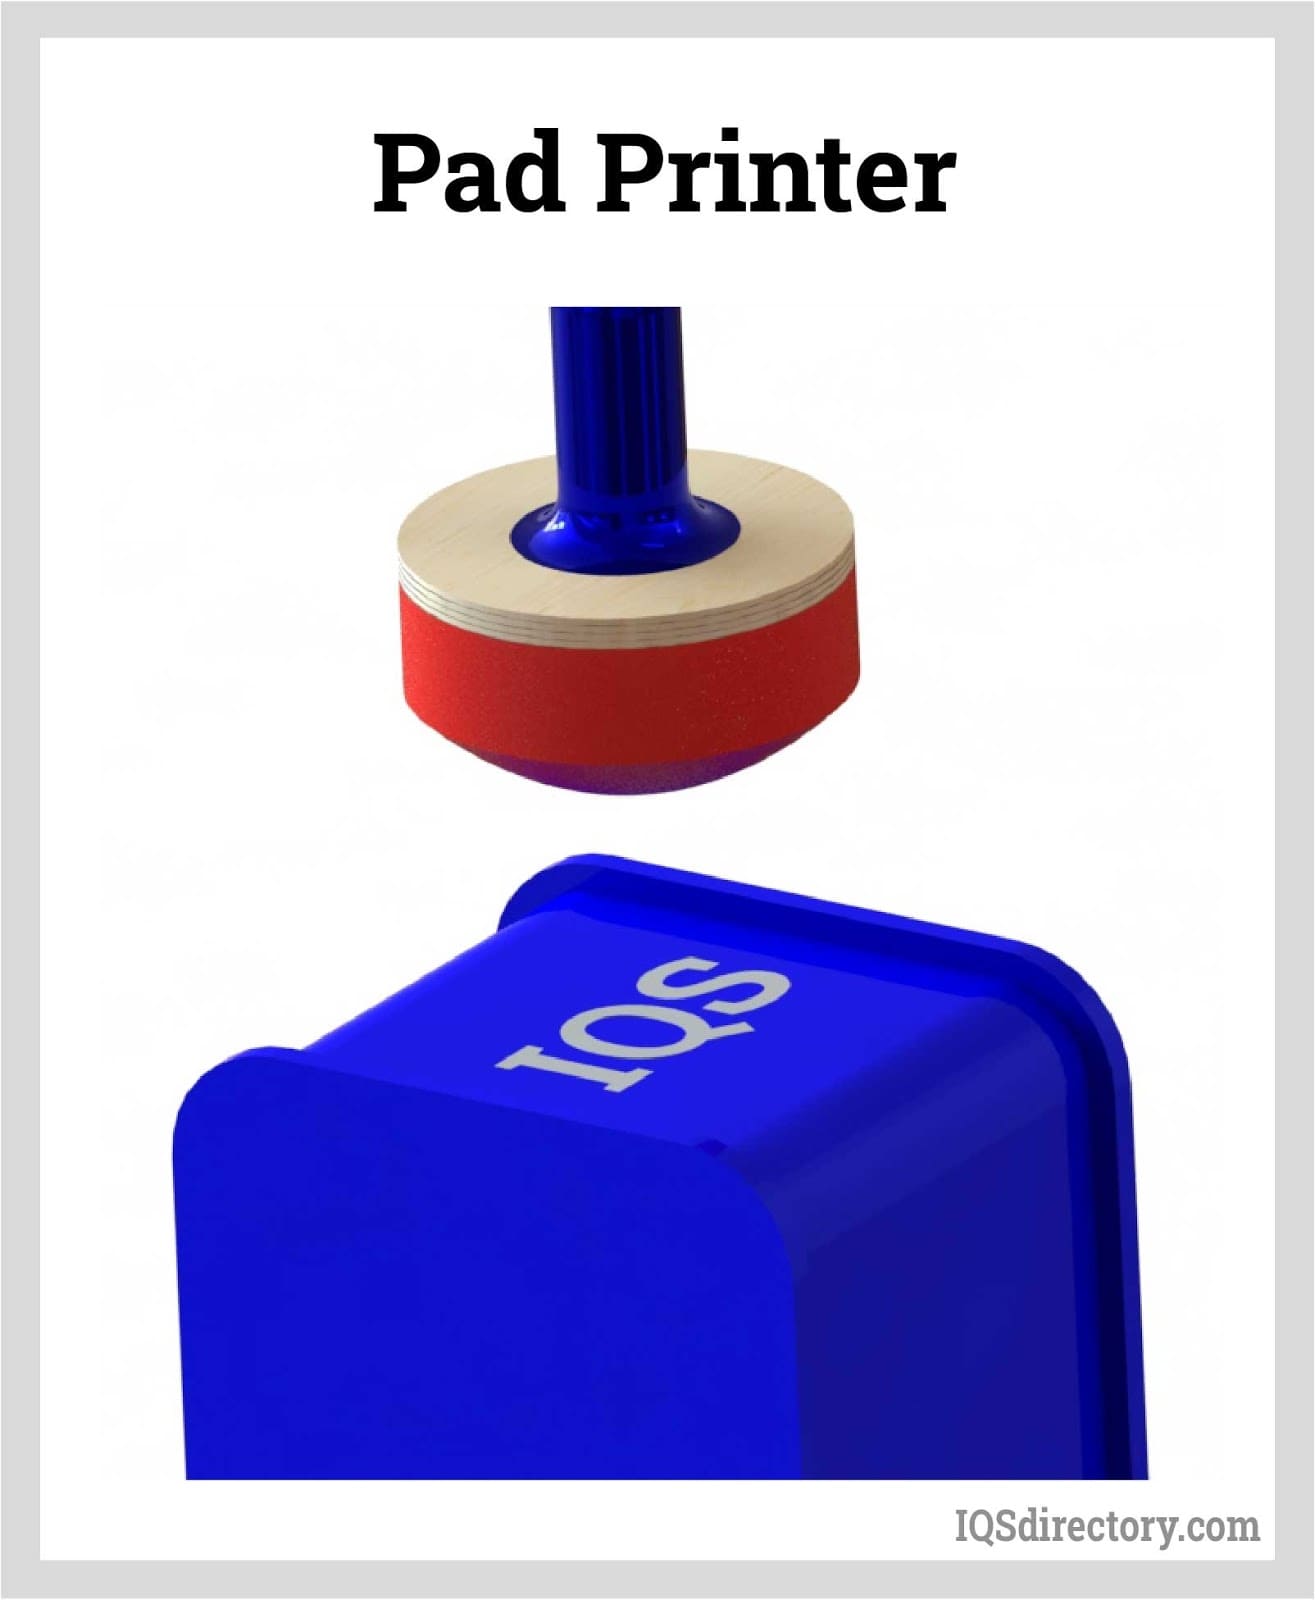 Pad Printer